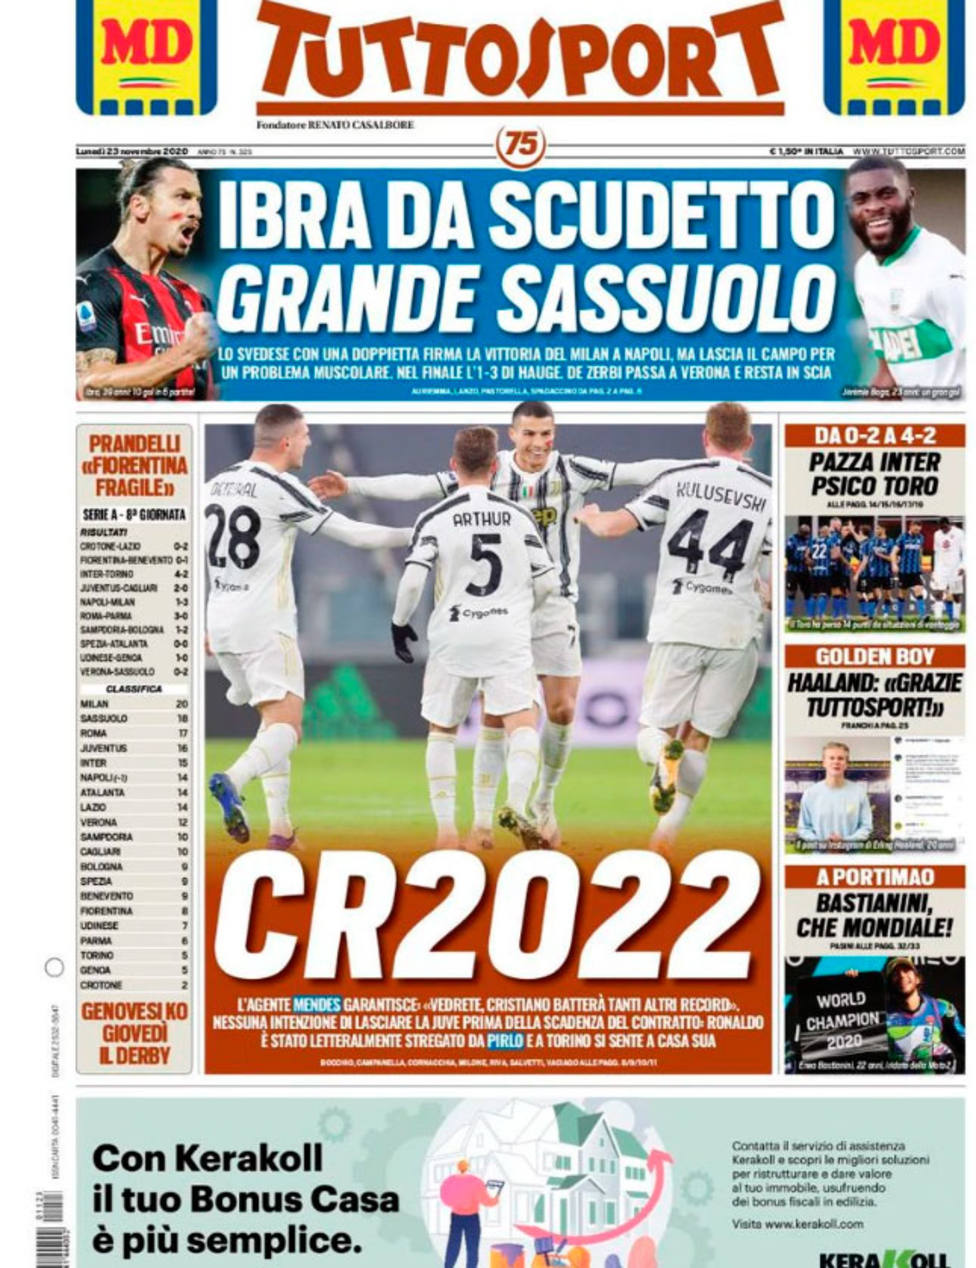 Jorge Mendes asegura que Cristiano Ronaldo seguirá en la Juventus hasta 2022